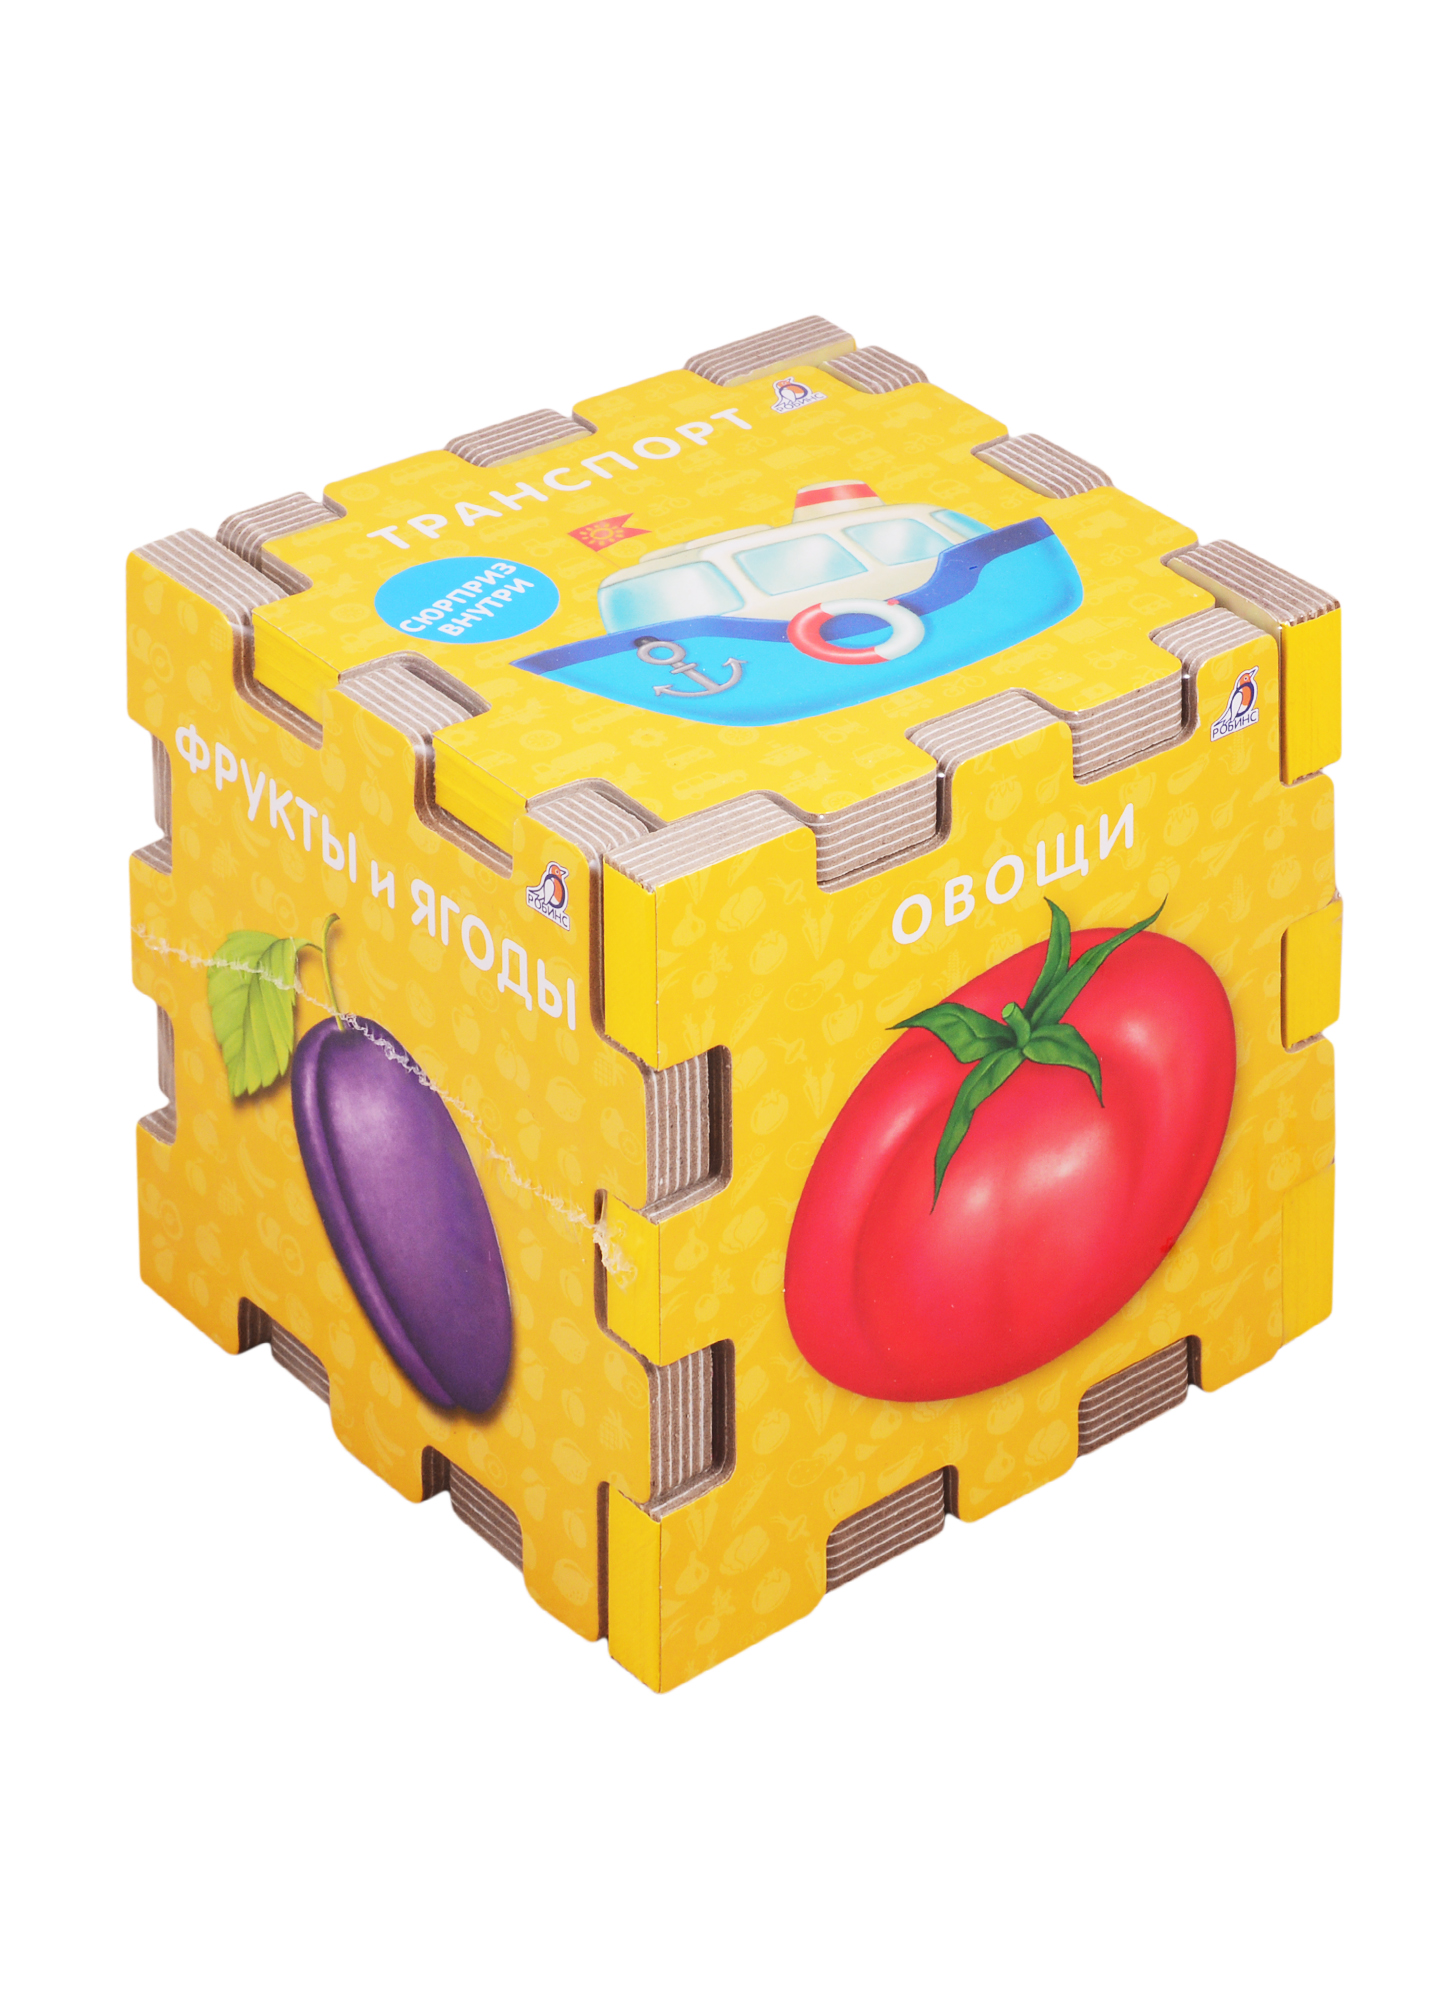 Книжный конструктор Для самых маленьких коллекция кубиков кленовые листья магический куб пазл кубик класс обучающие игрушки кубик 3x3 магнитный бесплатная доставка eduke игрушка